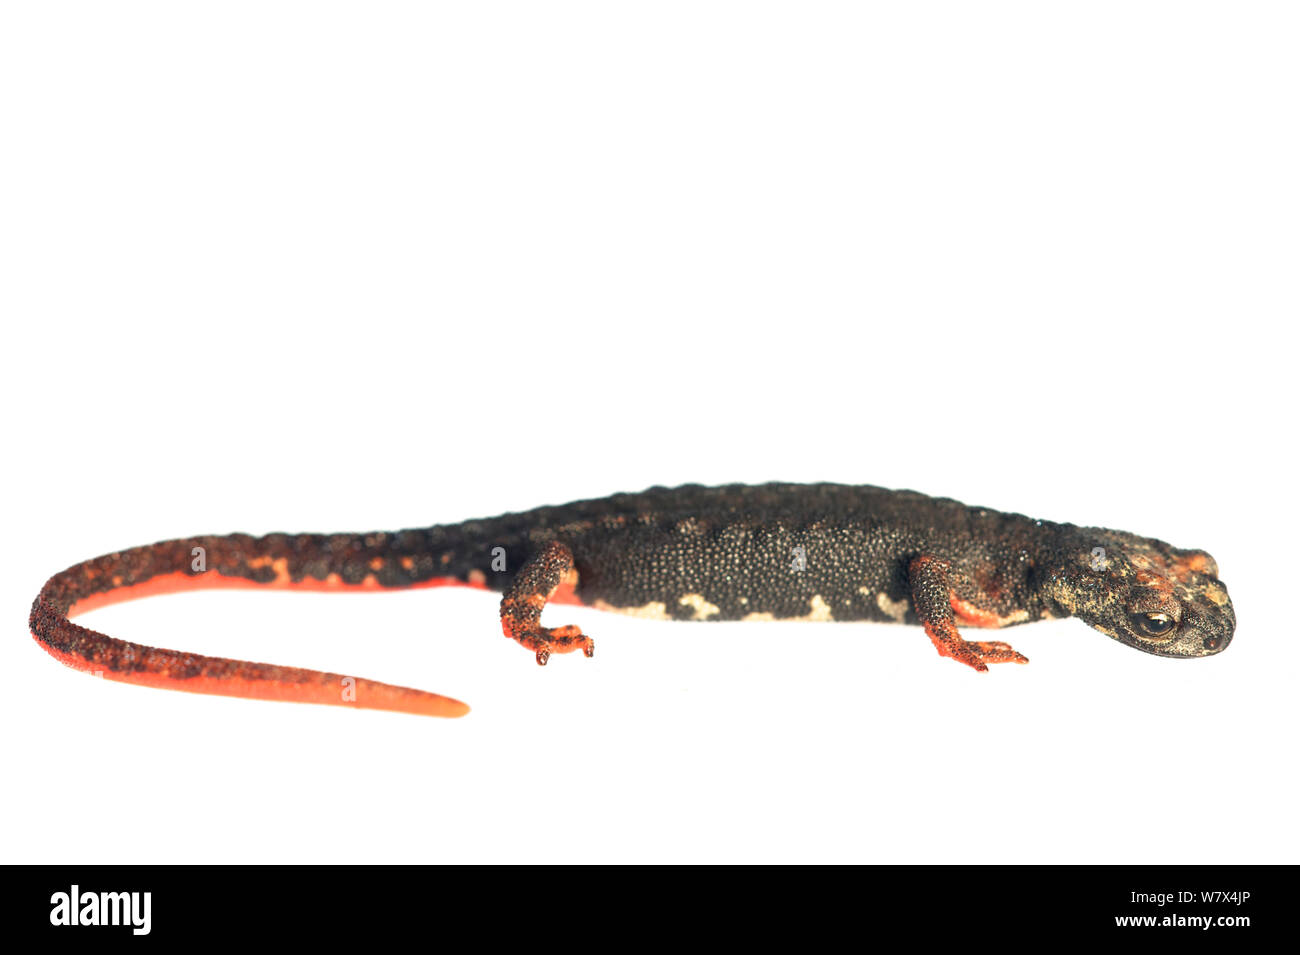 Northern spectacled salamander (Salamandrina perspicillata) contro uno sfondo bianco, Italia, Aprile. Condizioni controllate. Foto Stock